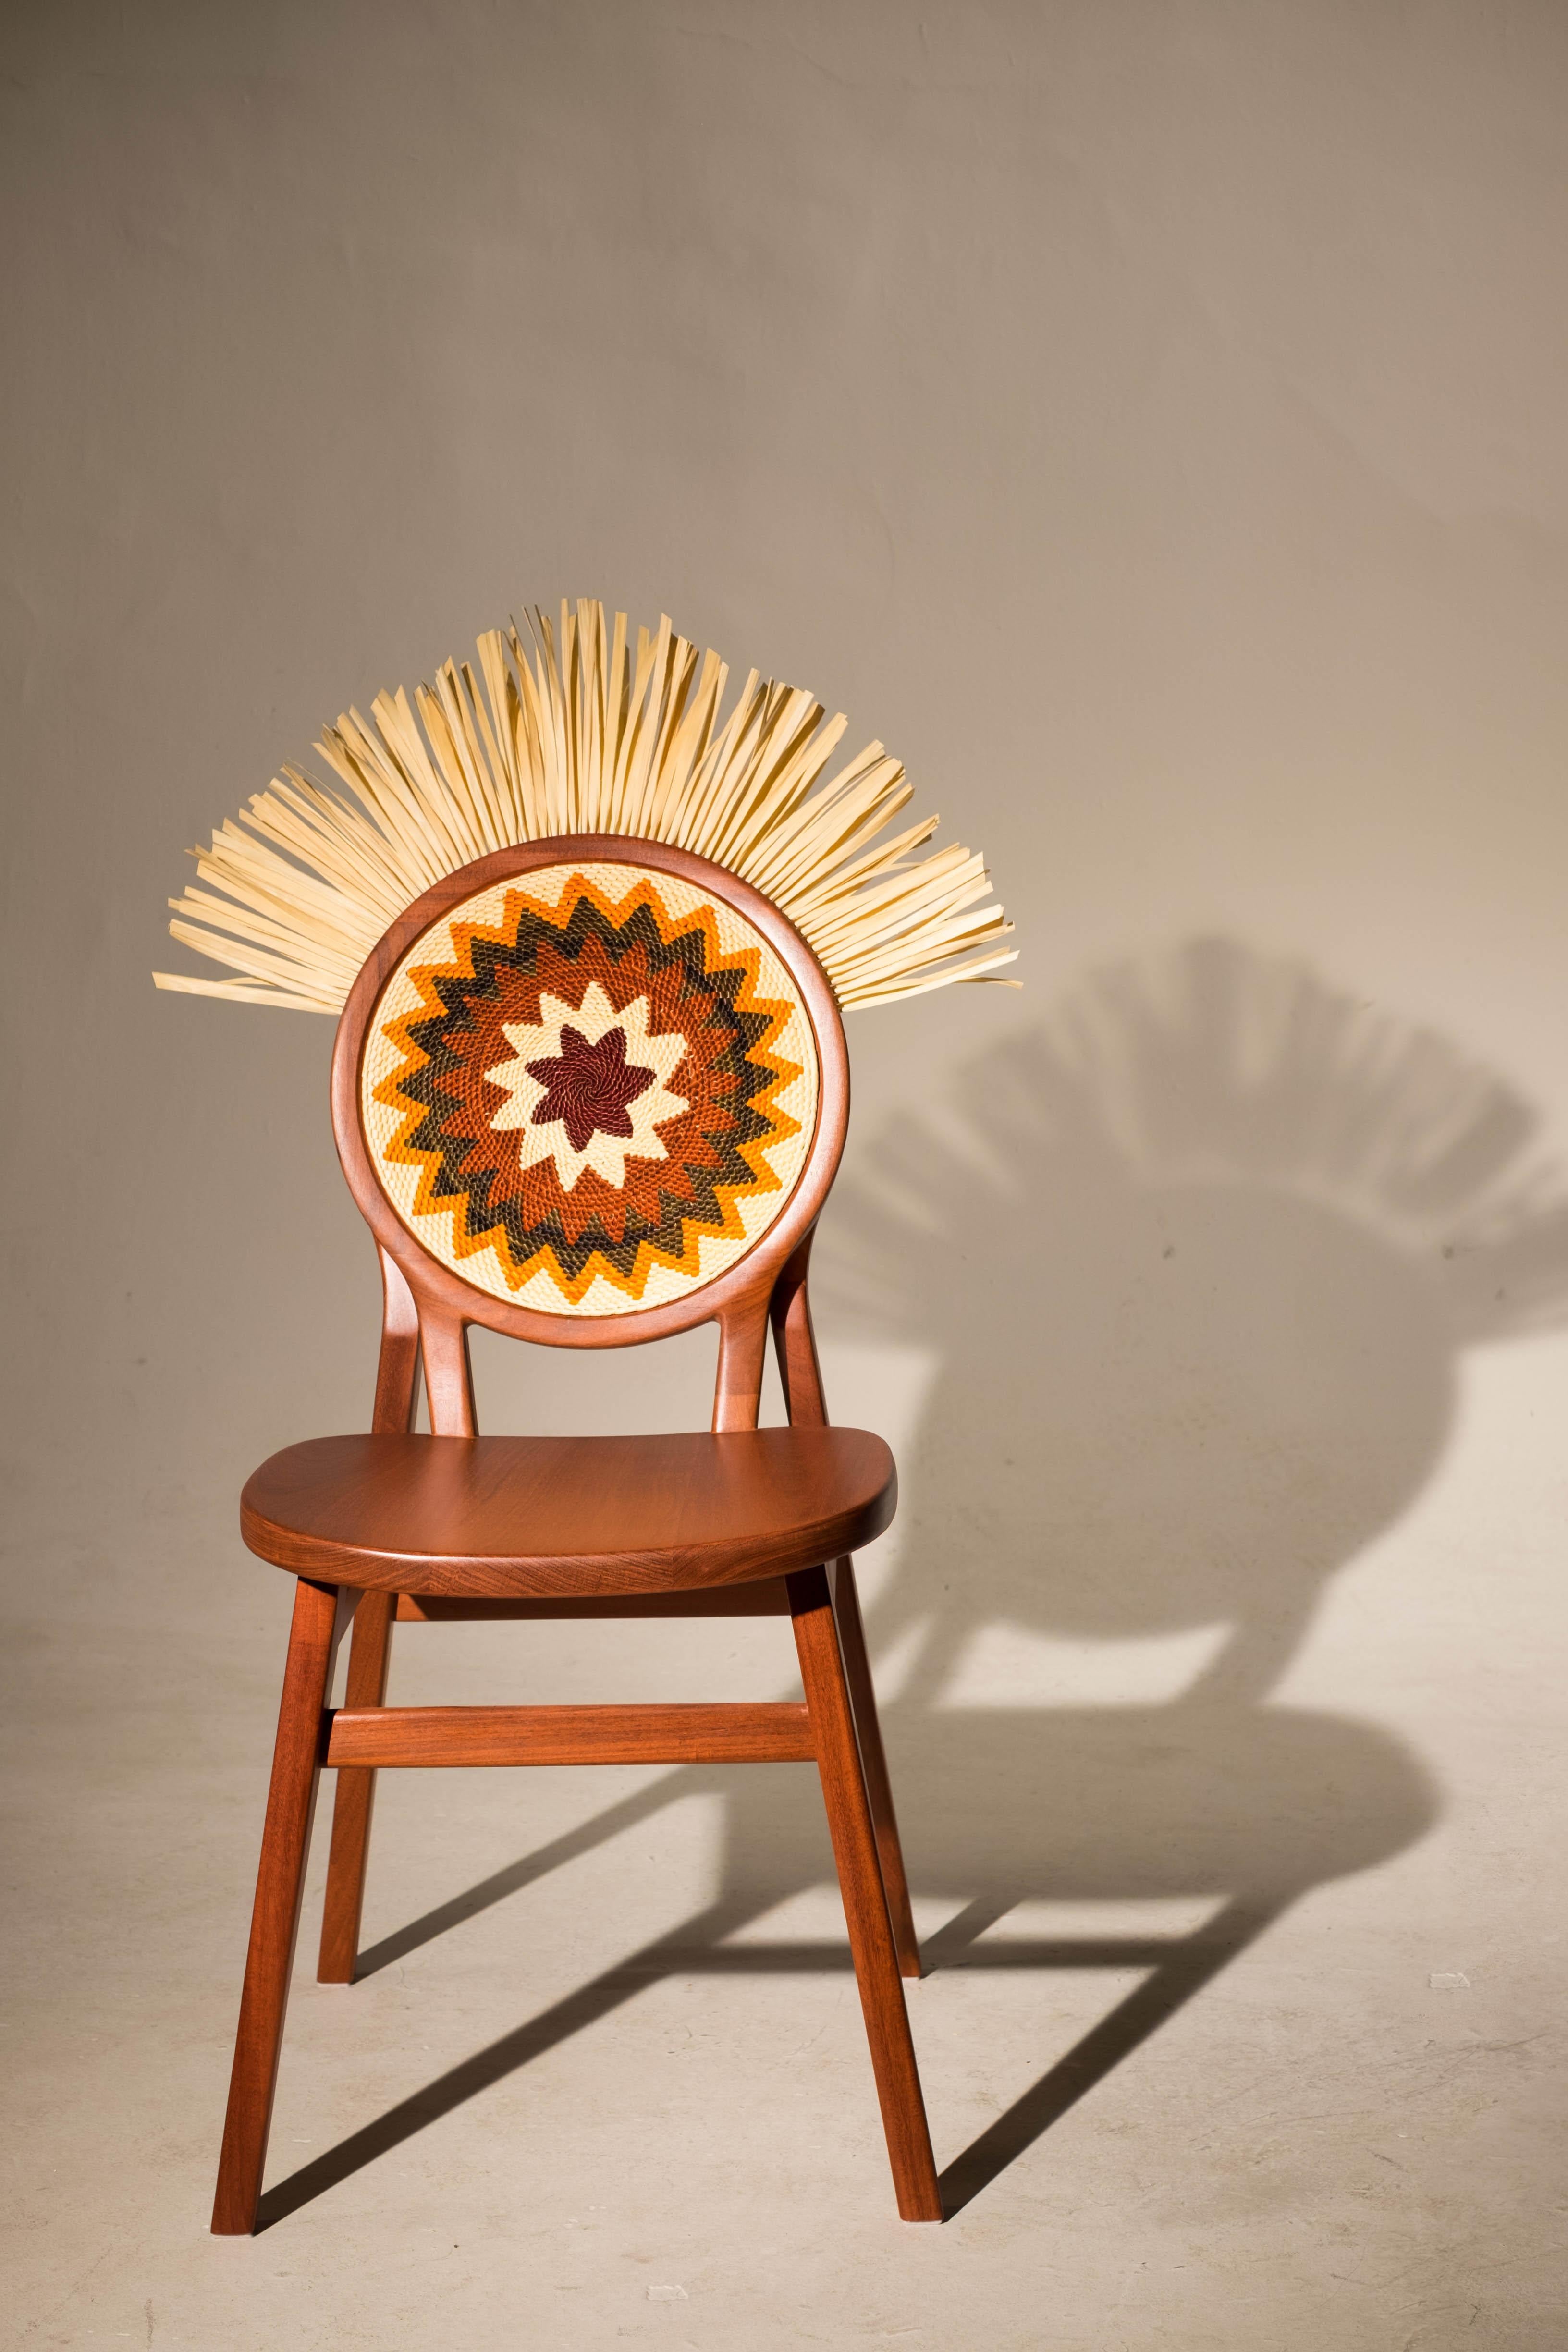 La chaise Cocar est fabriquée en bois de cabreúva pour mettre en valeur la tradition du tressage de la paille tucumã de la forêt amazonienne. Plus qu'une chaise, c'est un manifeste. 

L'artisanat est une culture. Elle est pleine de significations,